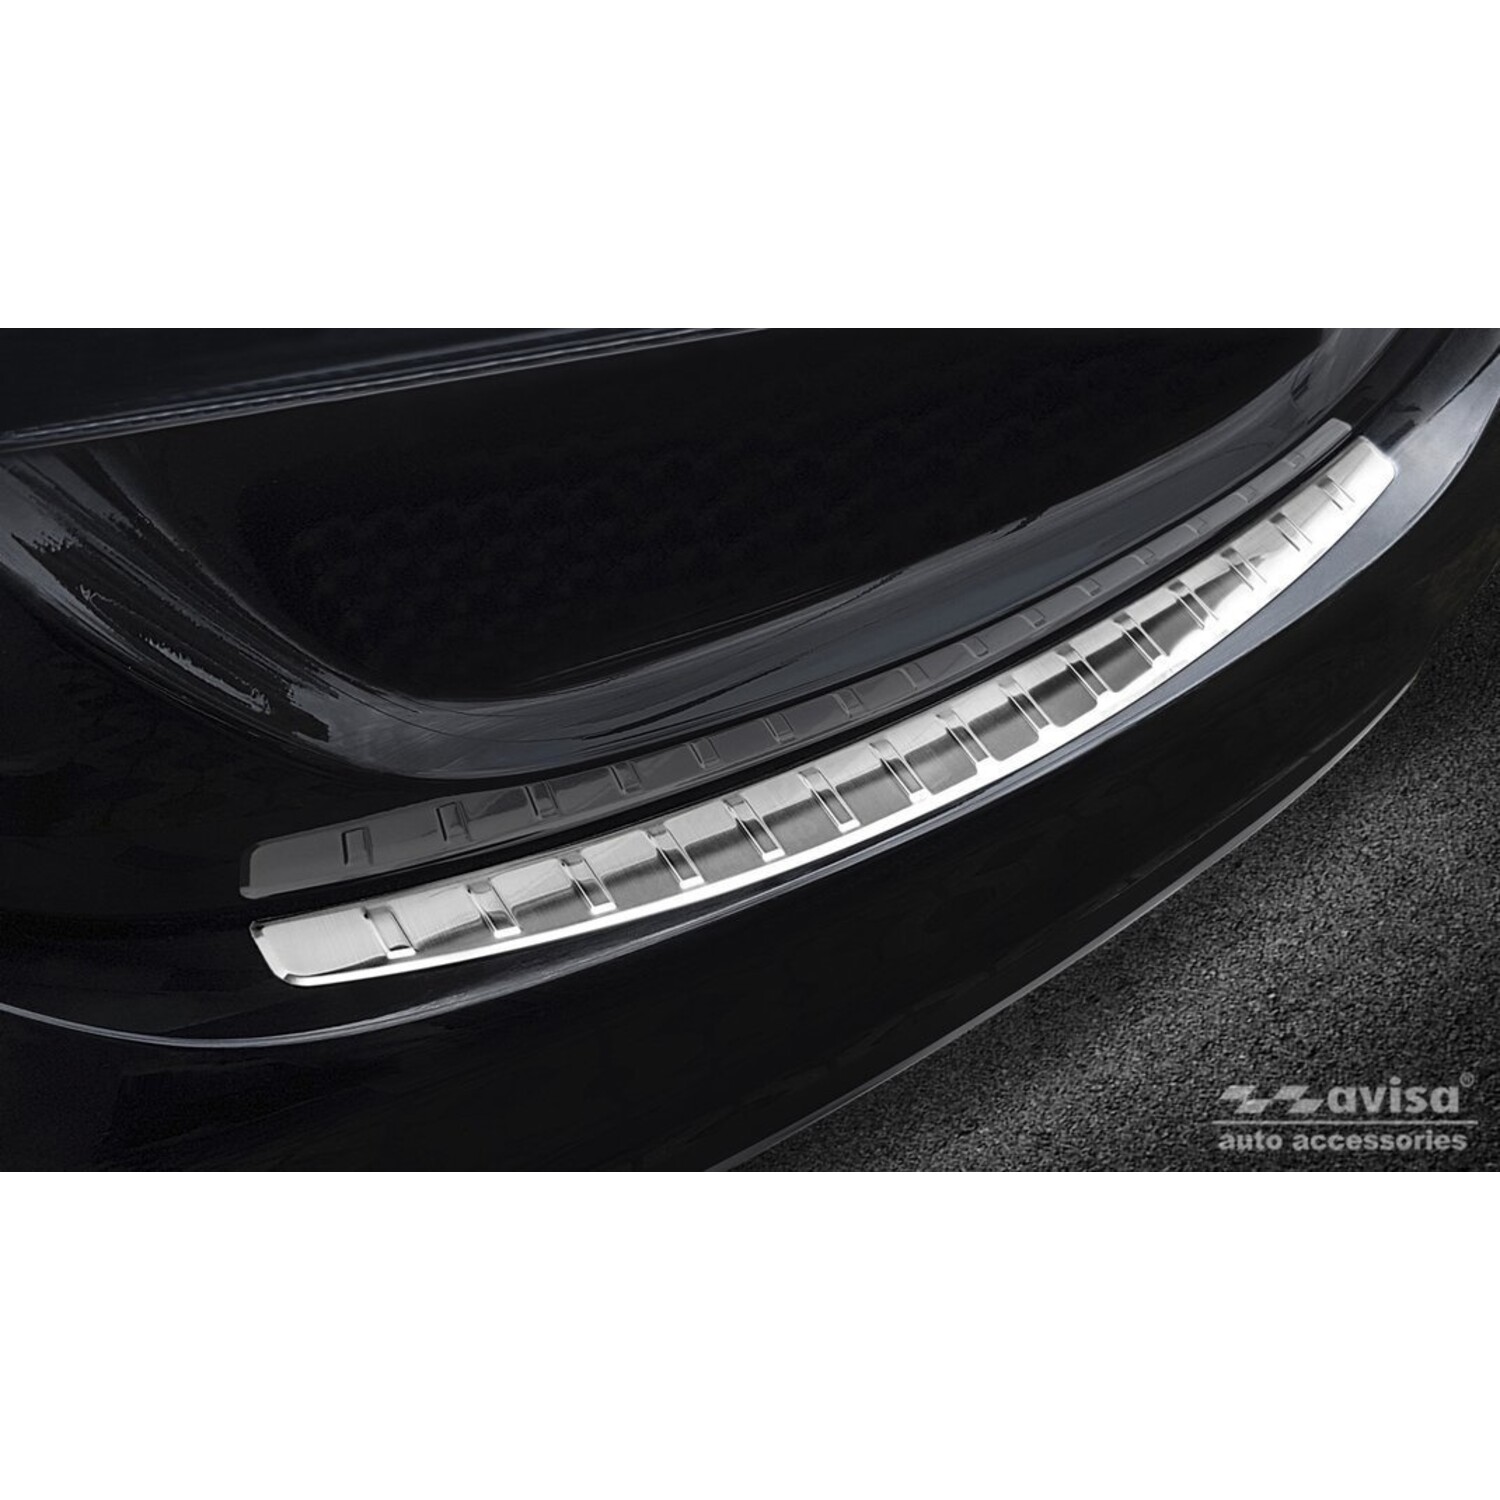 Ladekantenschutz für Mercedes C W205 Limousine - Maluch Premium Autozubehör